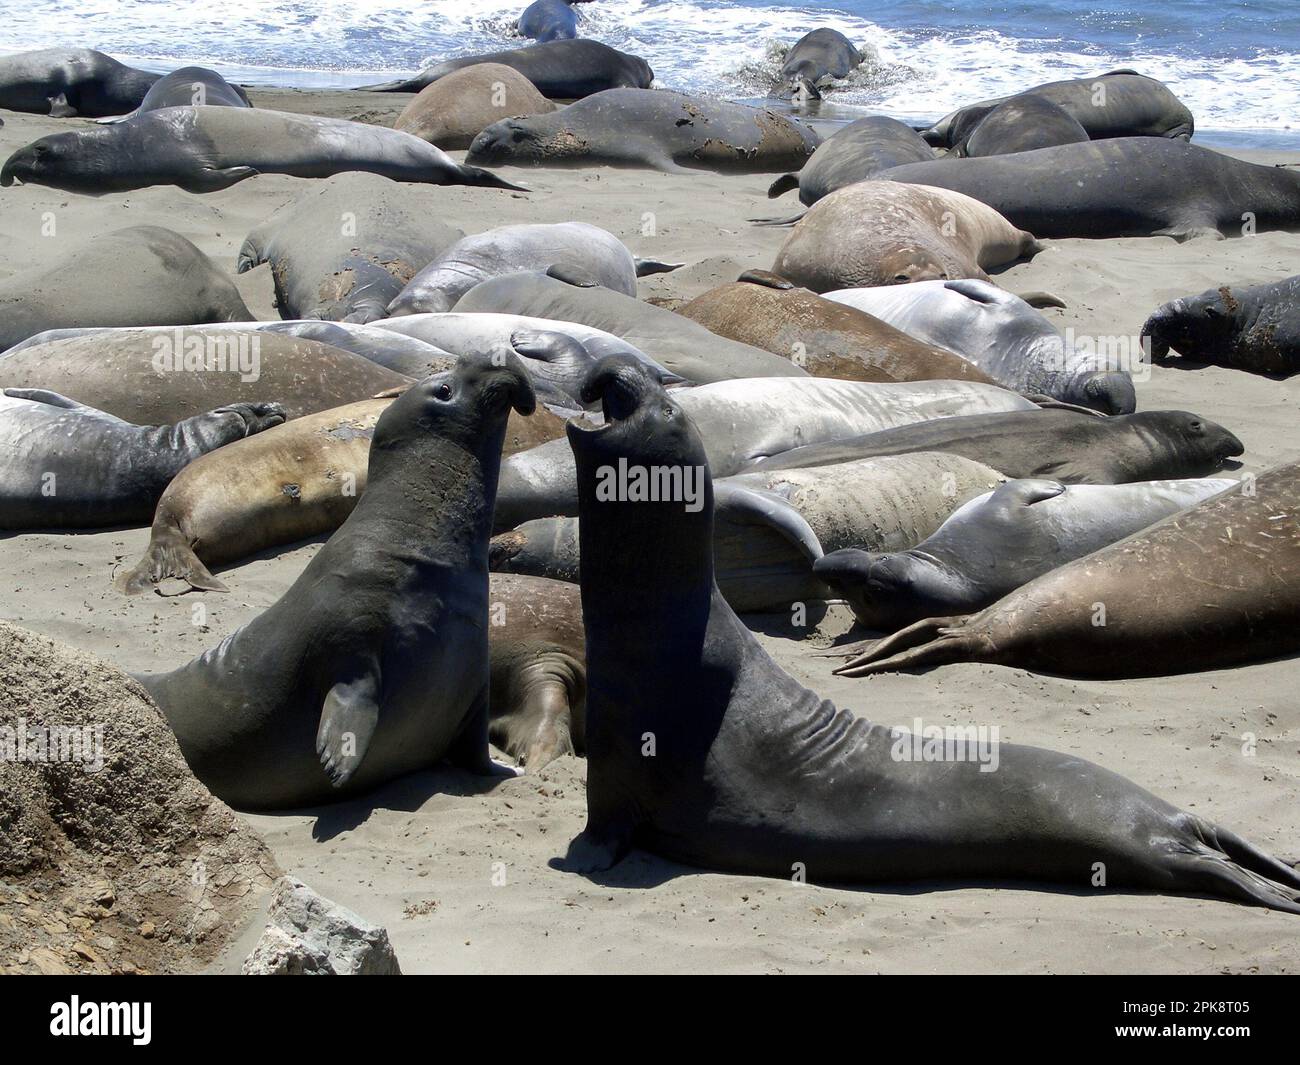 kämpfende männliche Nördliche See-Elefanten (Mirounga angustirostris) - fighting male northern elephant seals Stock Photo